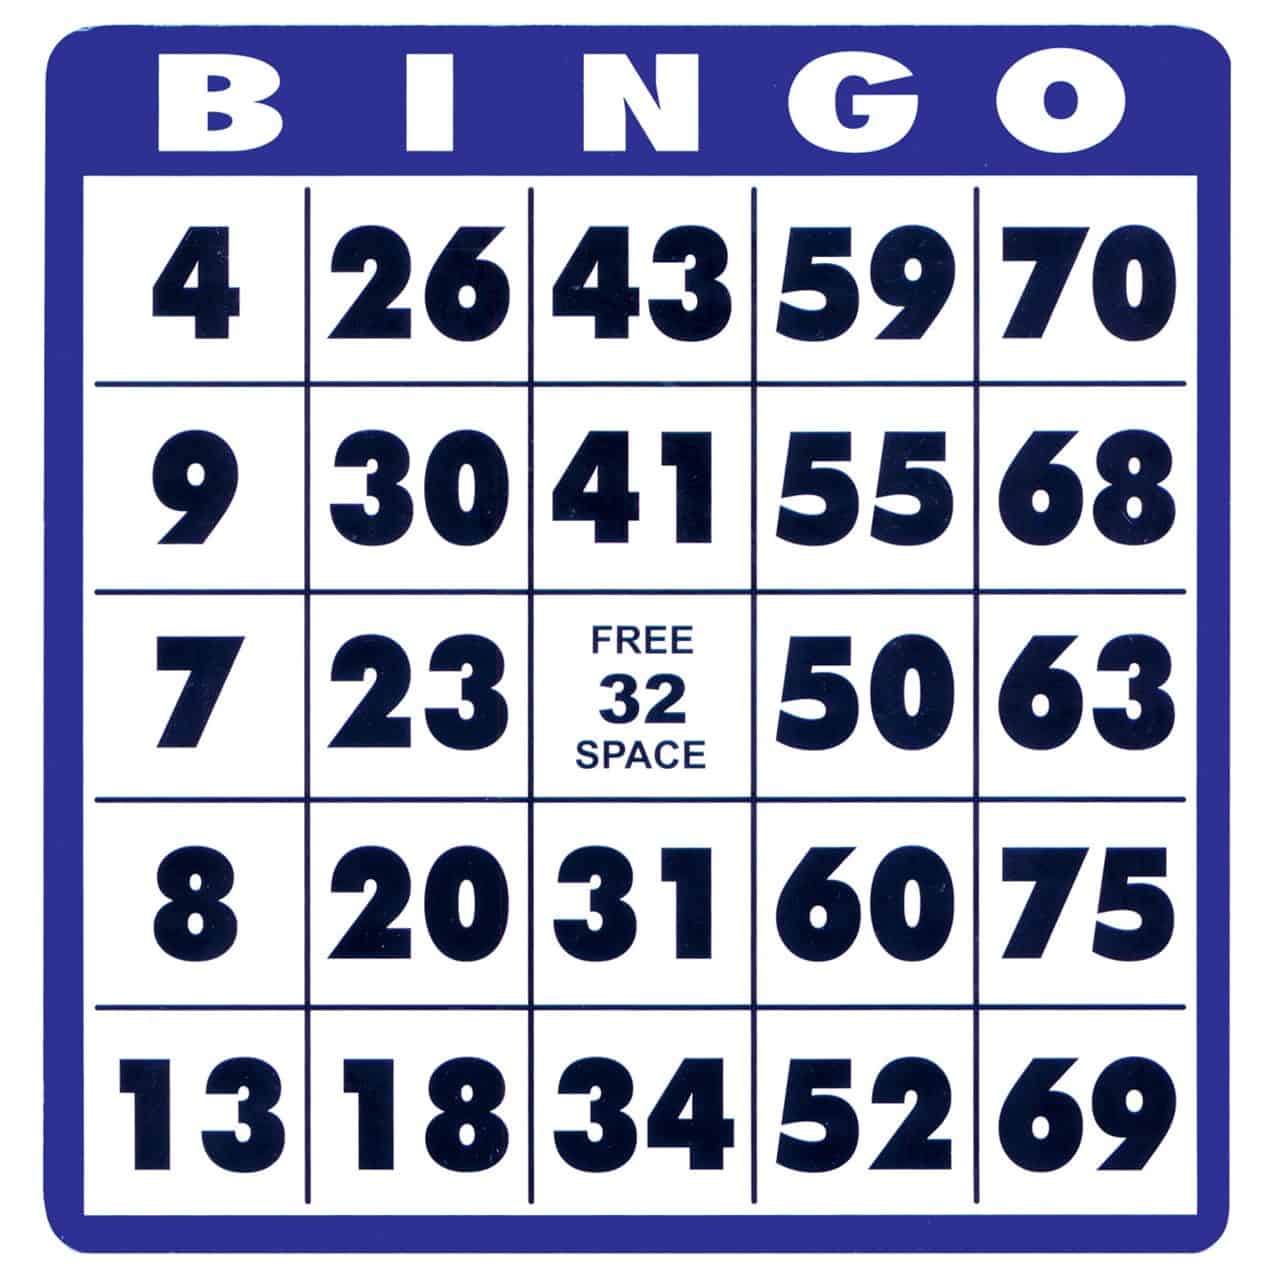 Bingo Day card